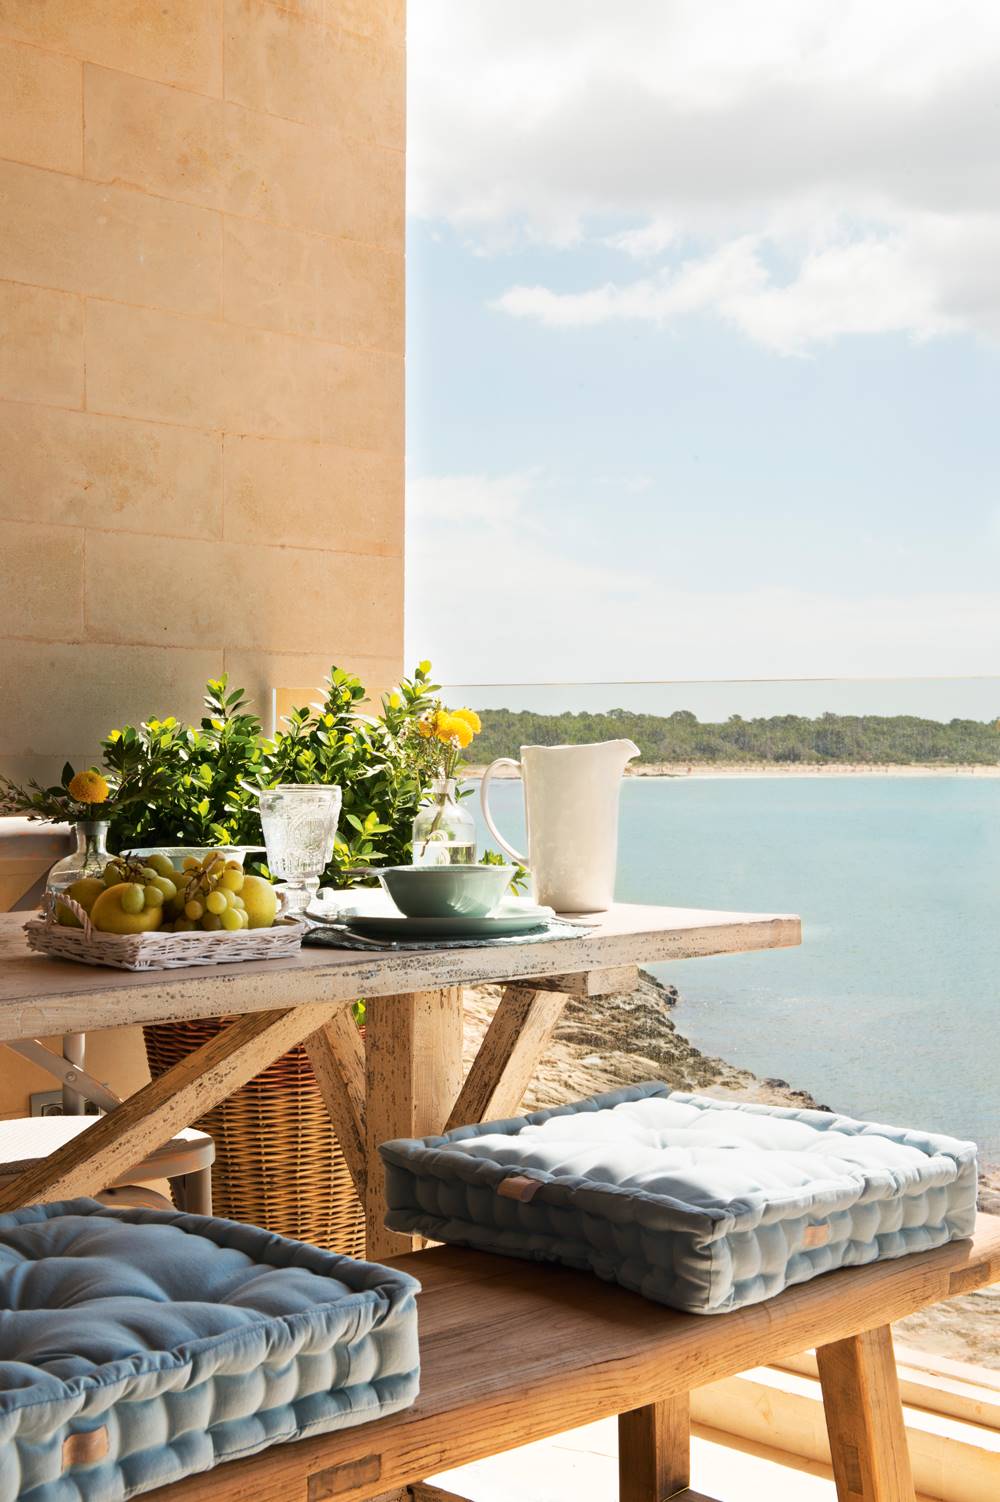 Comedor exterior en la terraza con vistas al mar, mesa y banco de madera y cojines de asiento de color azul.